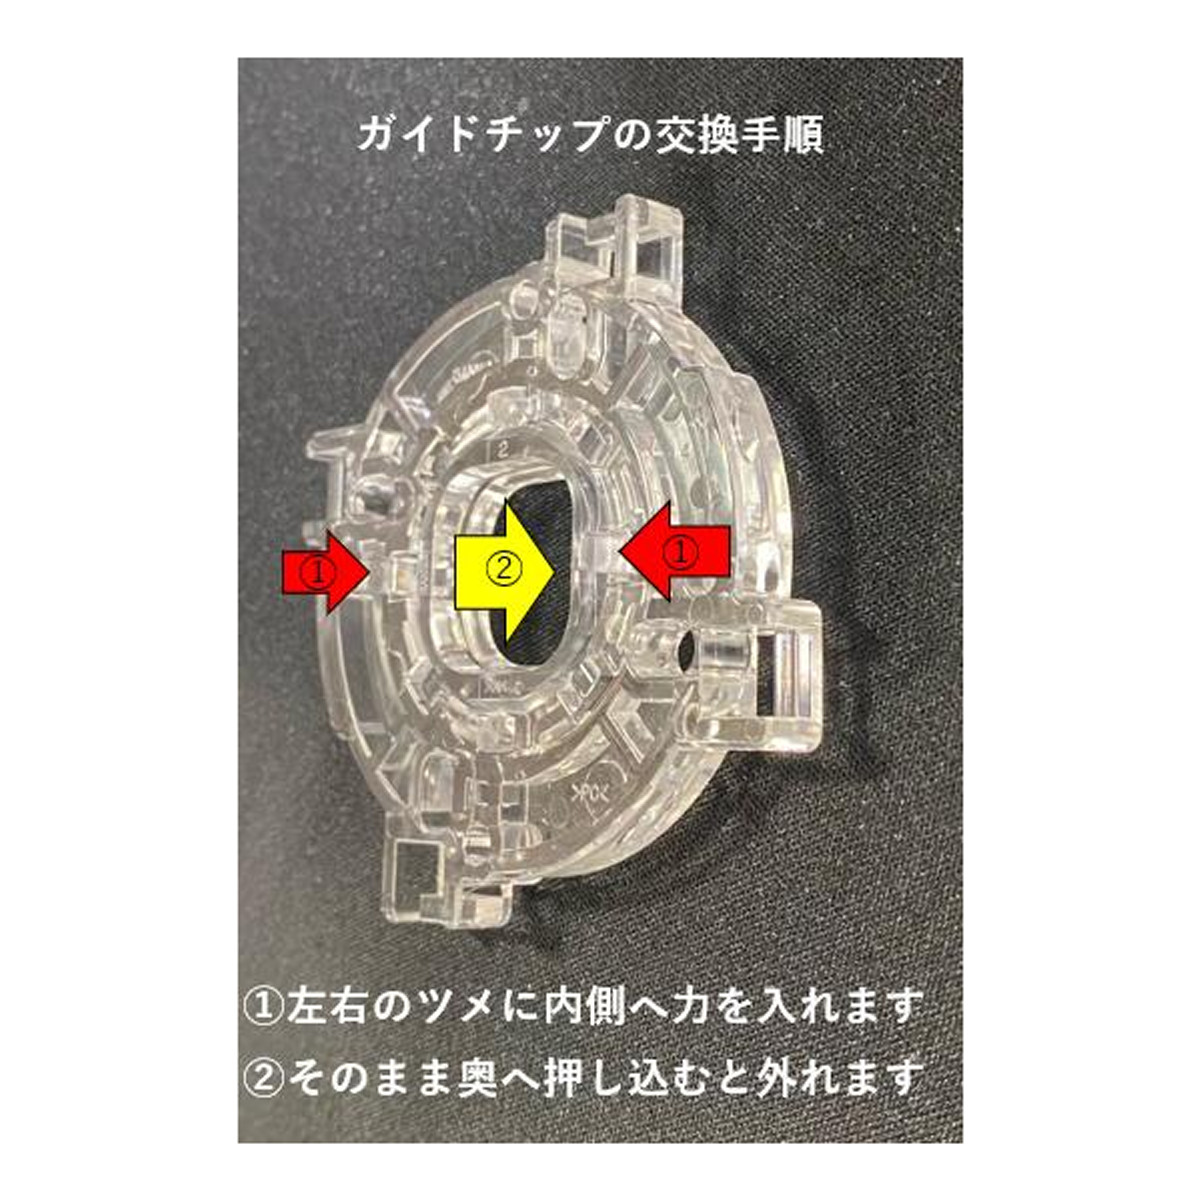 【三和電子】 JLFレバーカスタマイズ用新ガイド GT-8X専用ガイドチップ 【GTN】